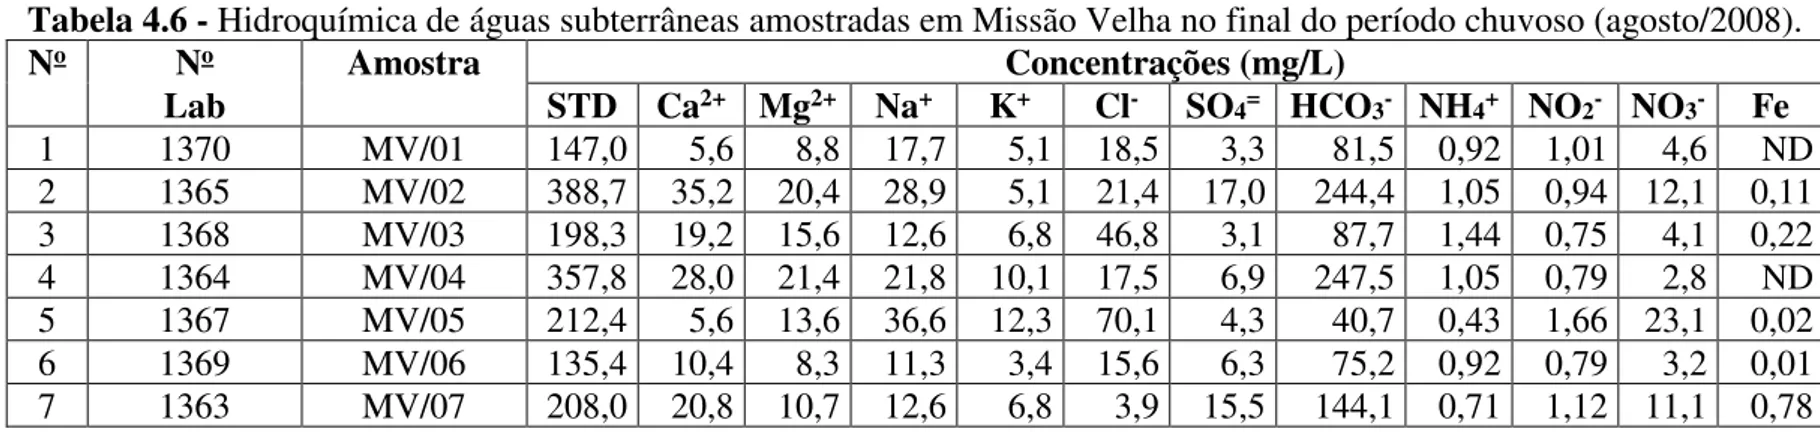 Tabela 4.6 - Hidroquímica de águas subterrâneas amostradas em Missão Velha no final do período chuvoso (agosto/2008)